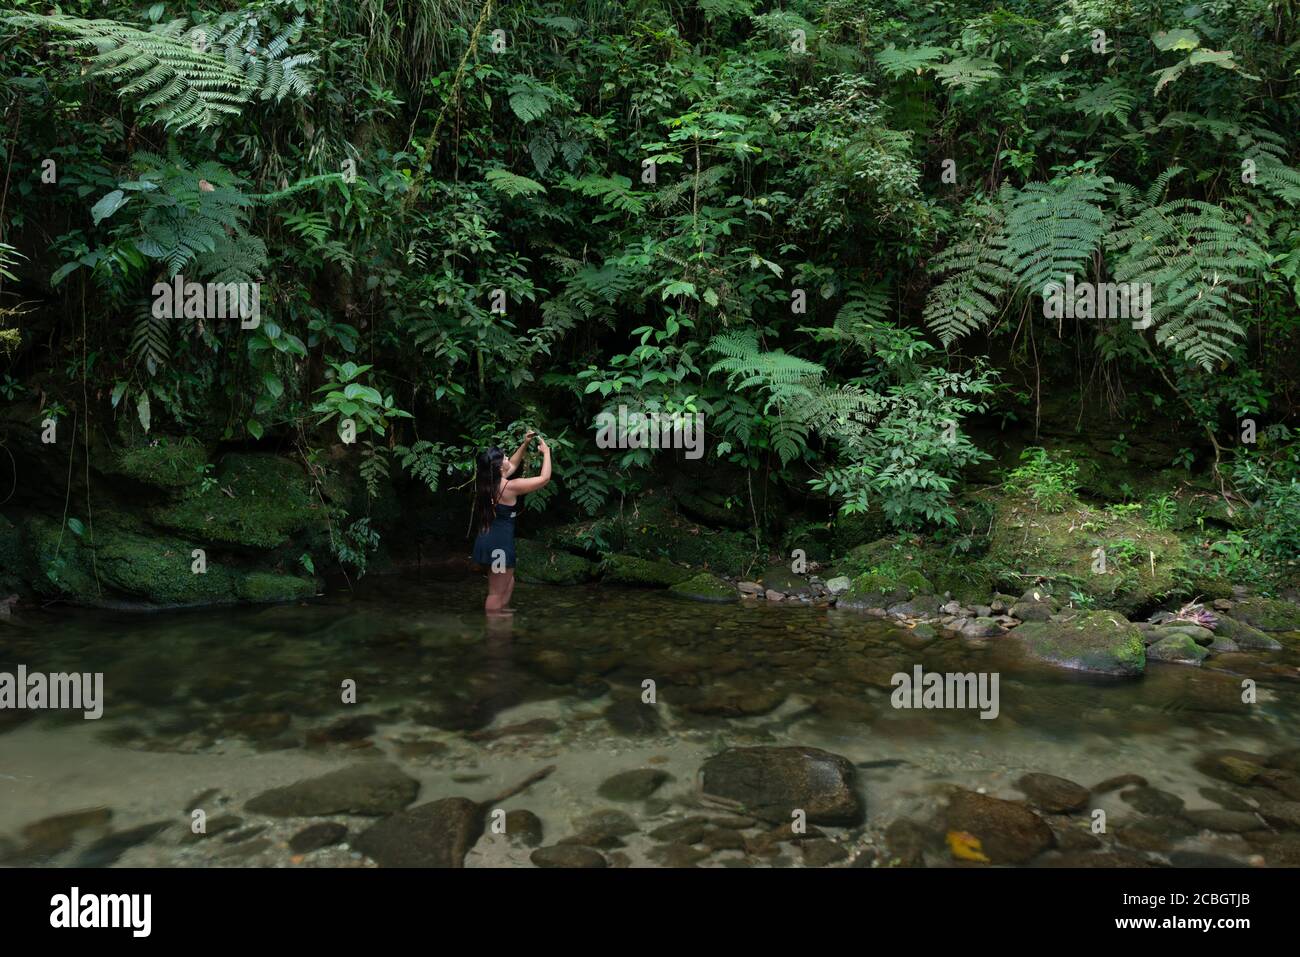 Une femme photographiant des plantes avec son téléphone cellulaire à l'intérieur d'une rivière dans la forêt tropicale de l'Atlantique d'Ubatuba, se Brésil Banque D'Images